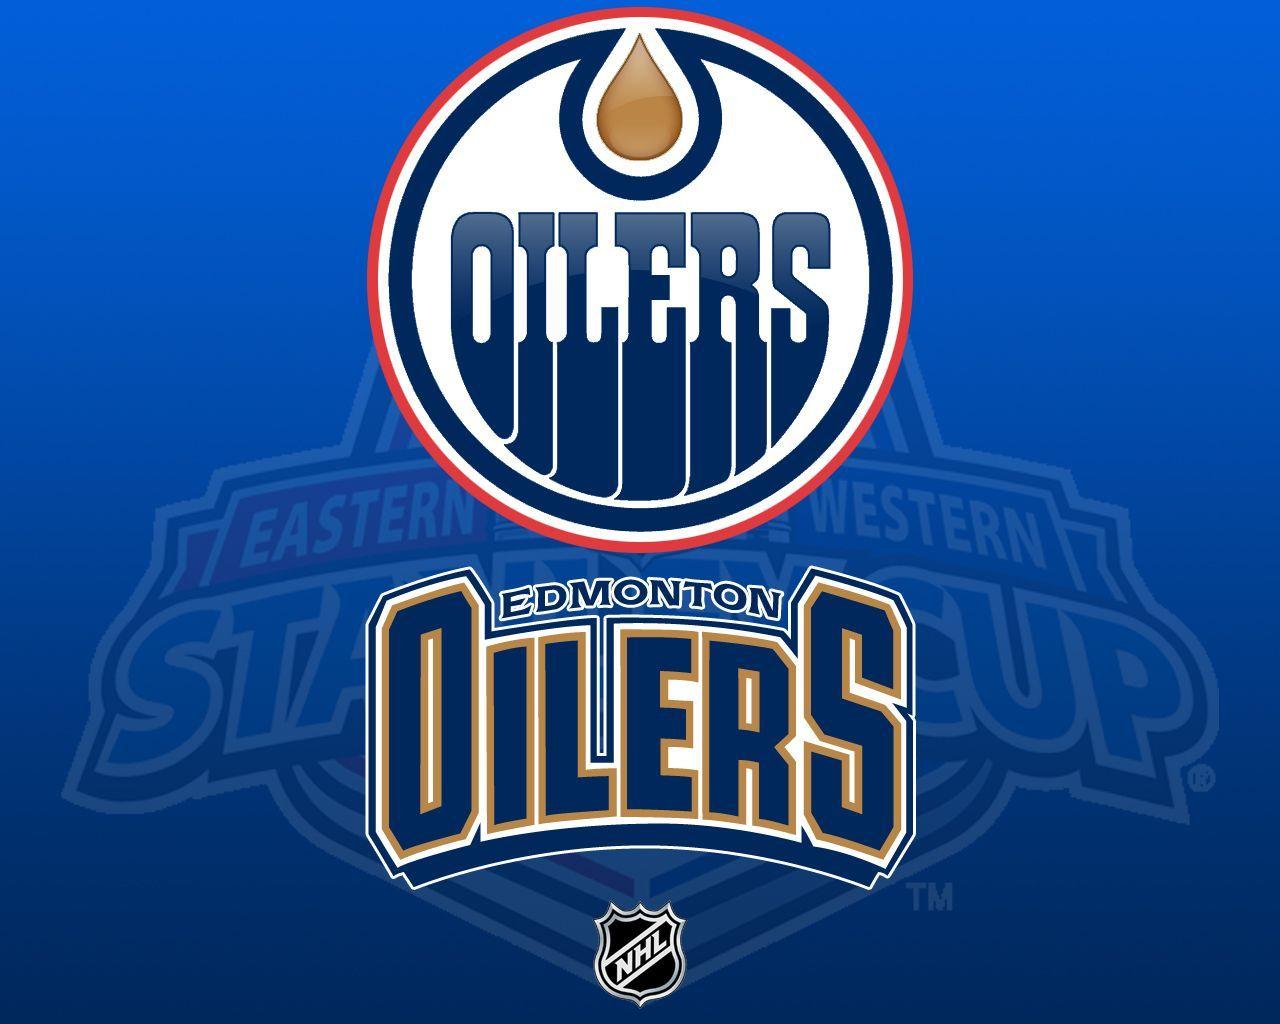 Edmonton Oilers wallpaper. Edmonton Oilers wallpaper